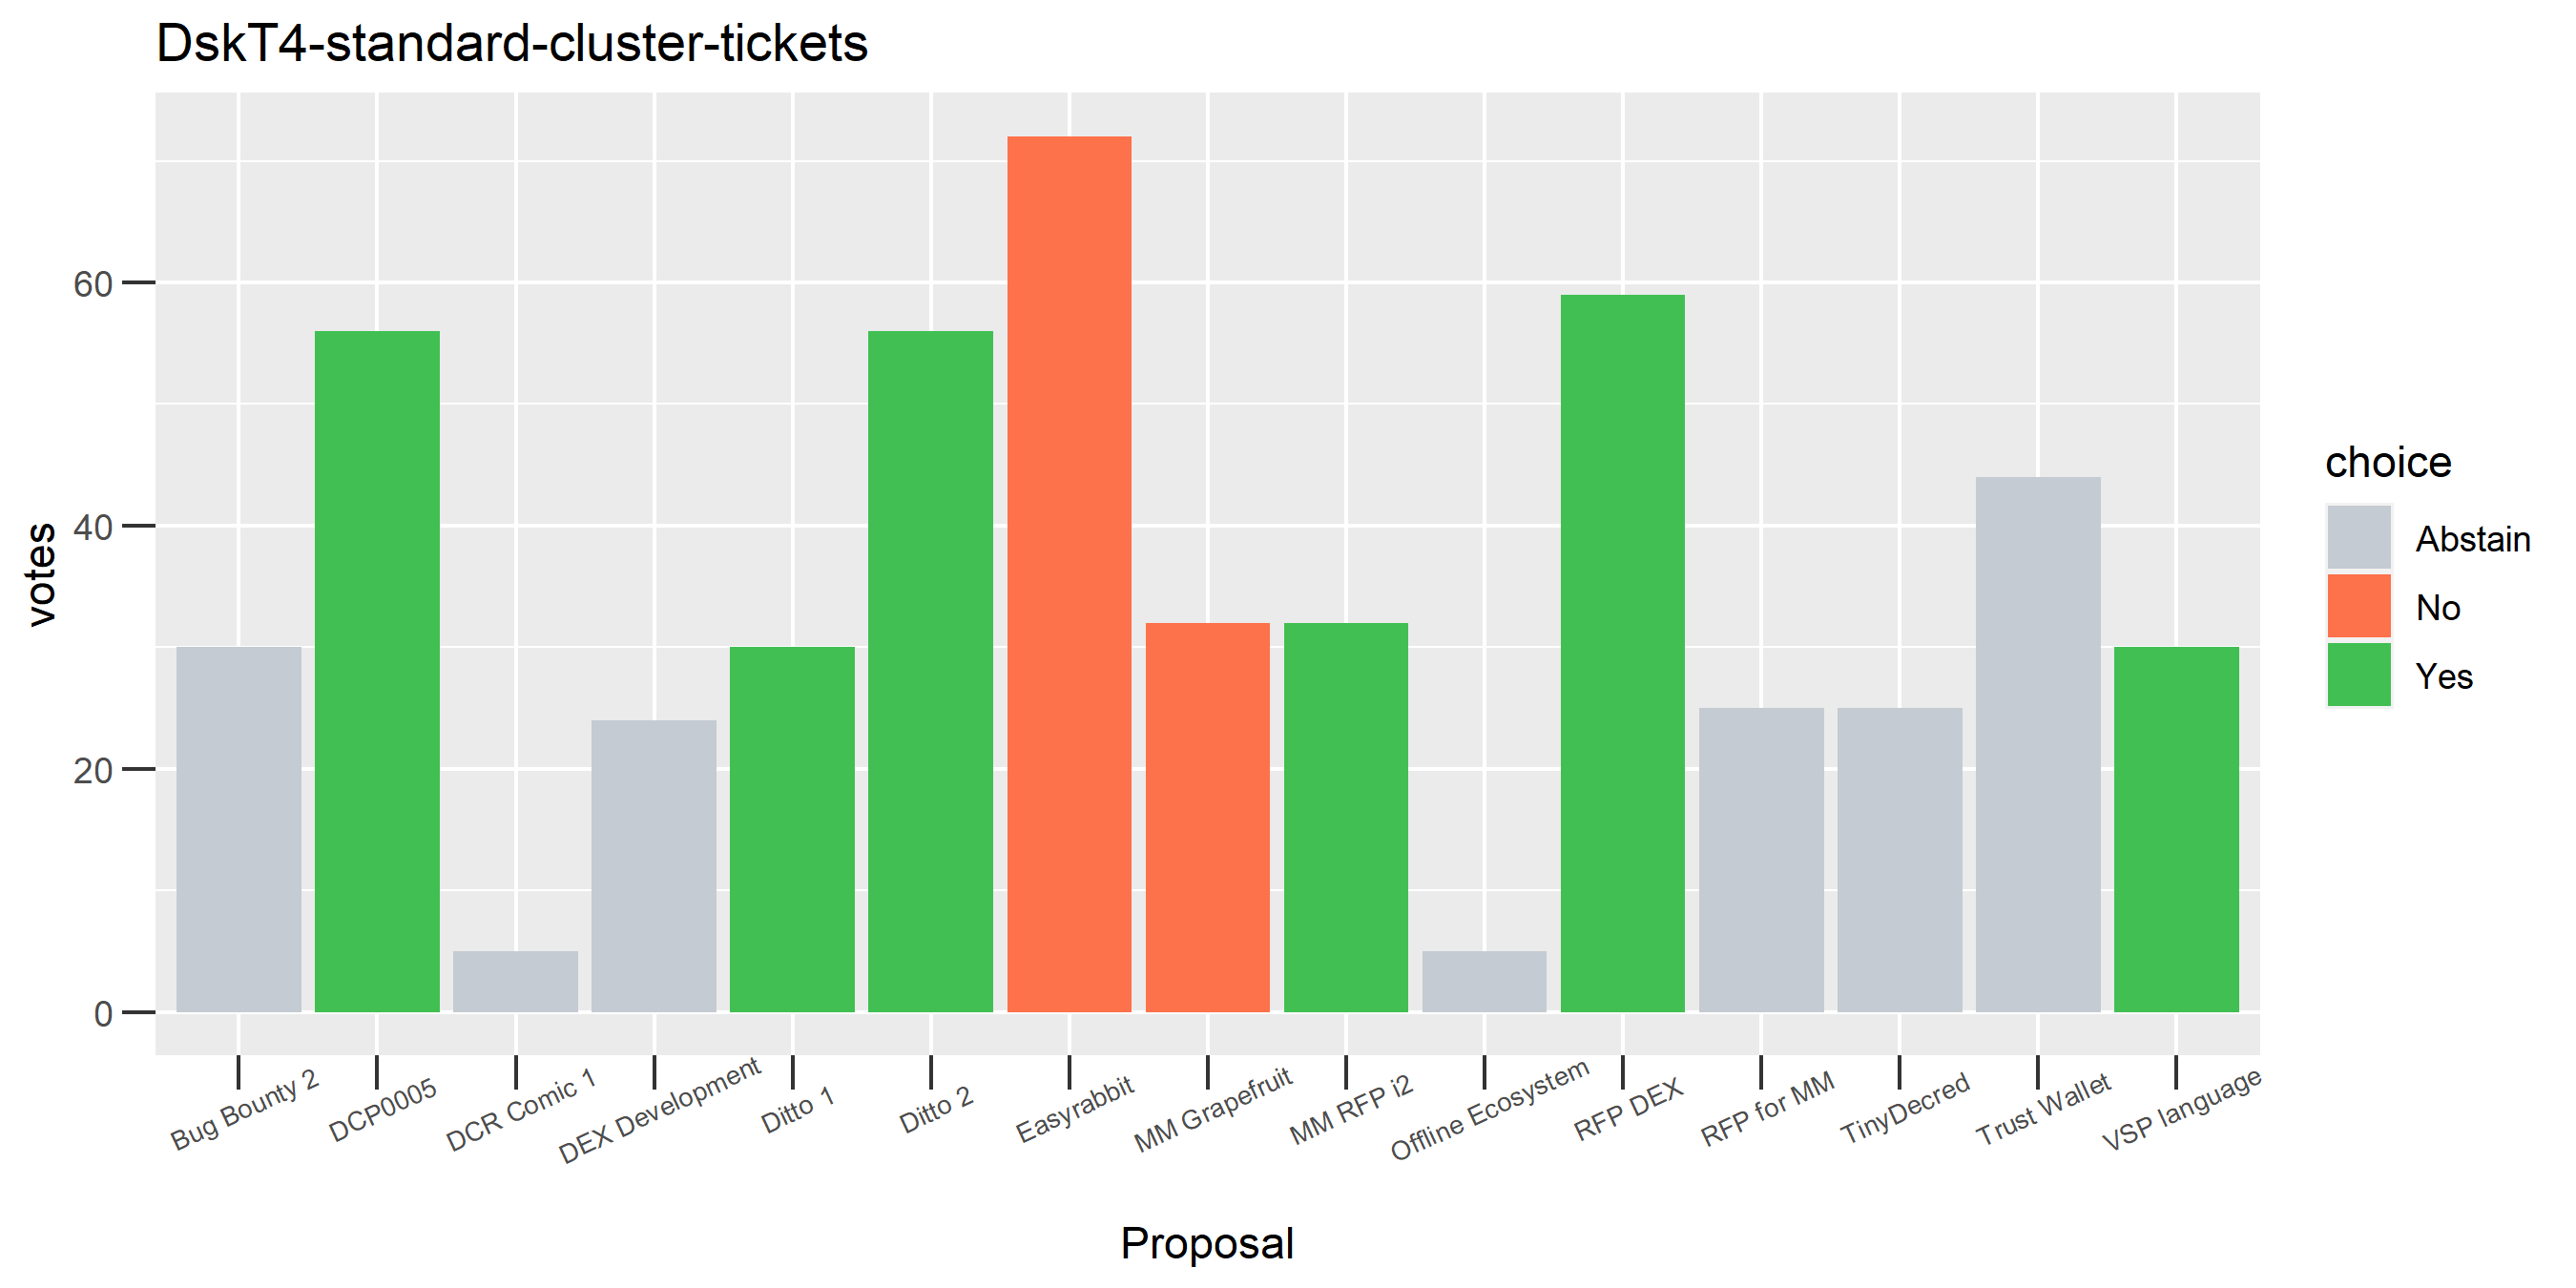 DskT4-standard-cluster-tickets